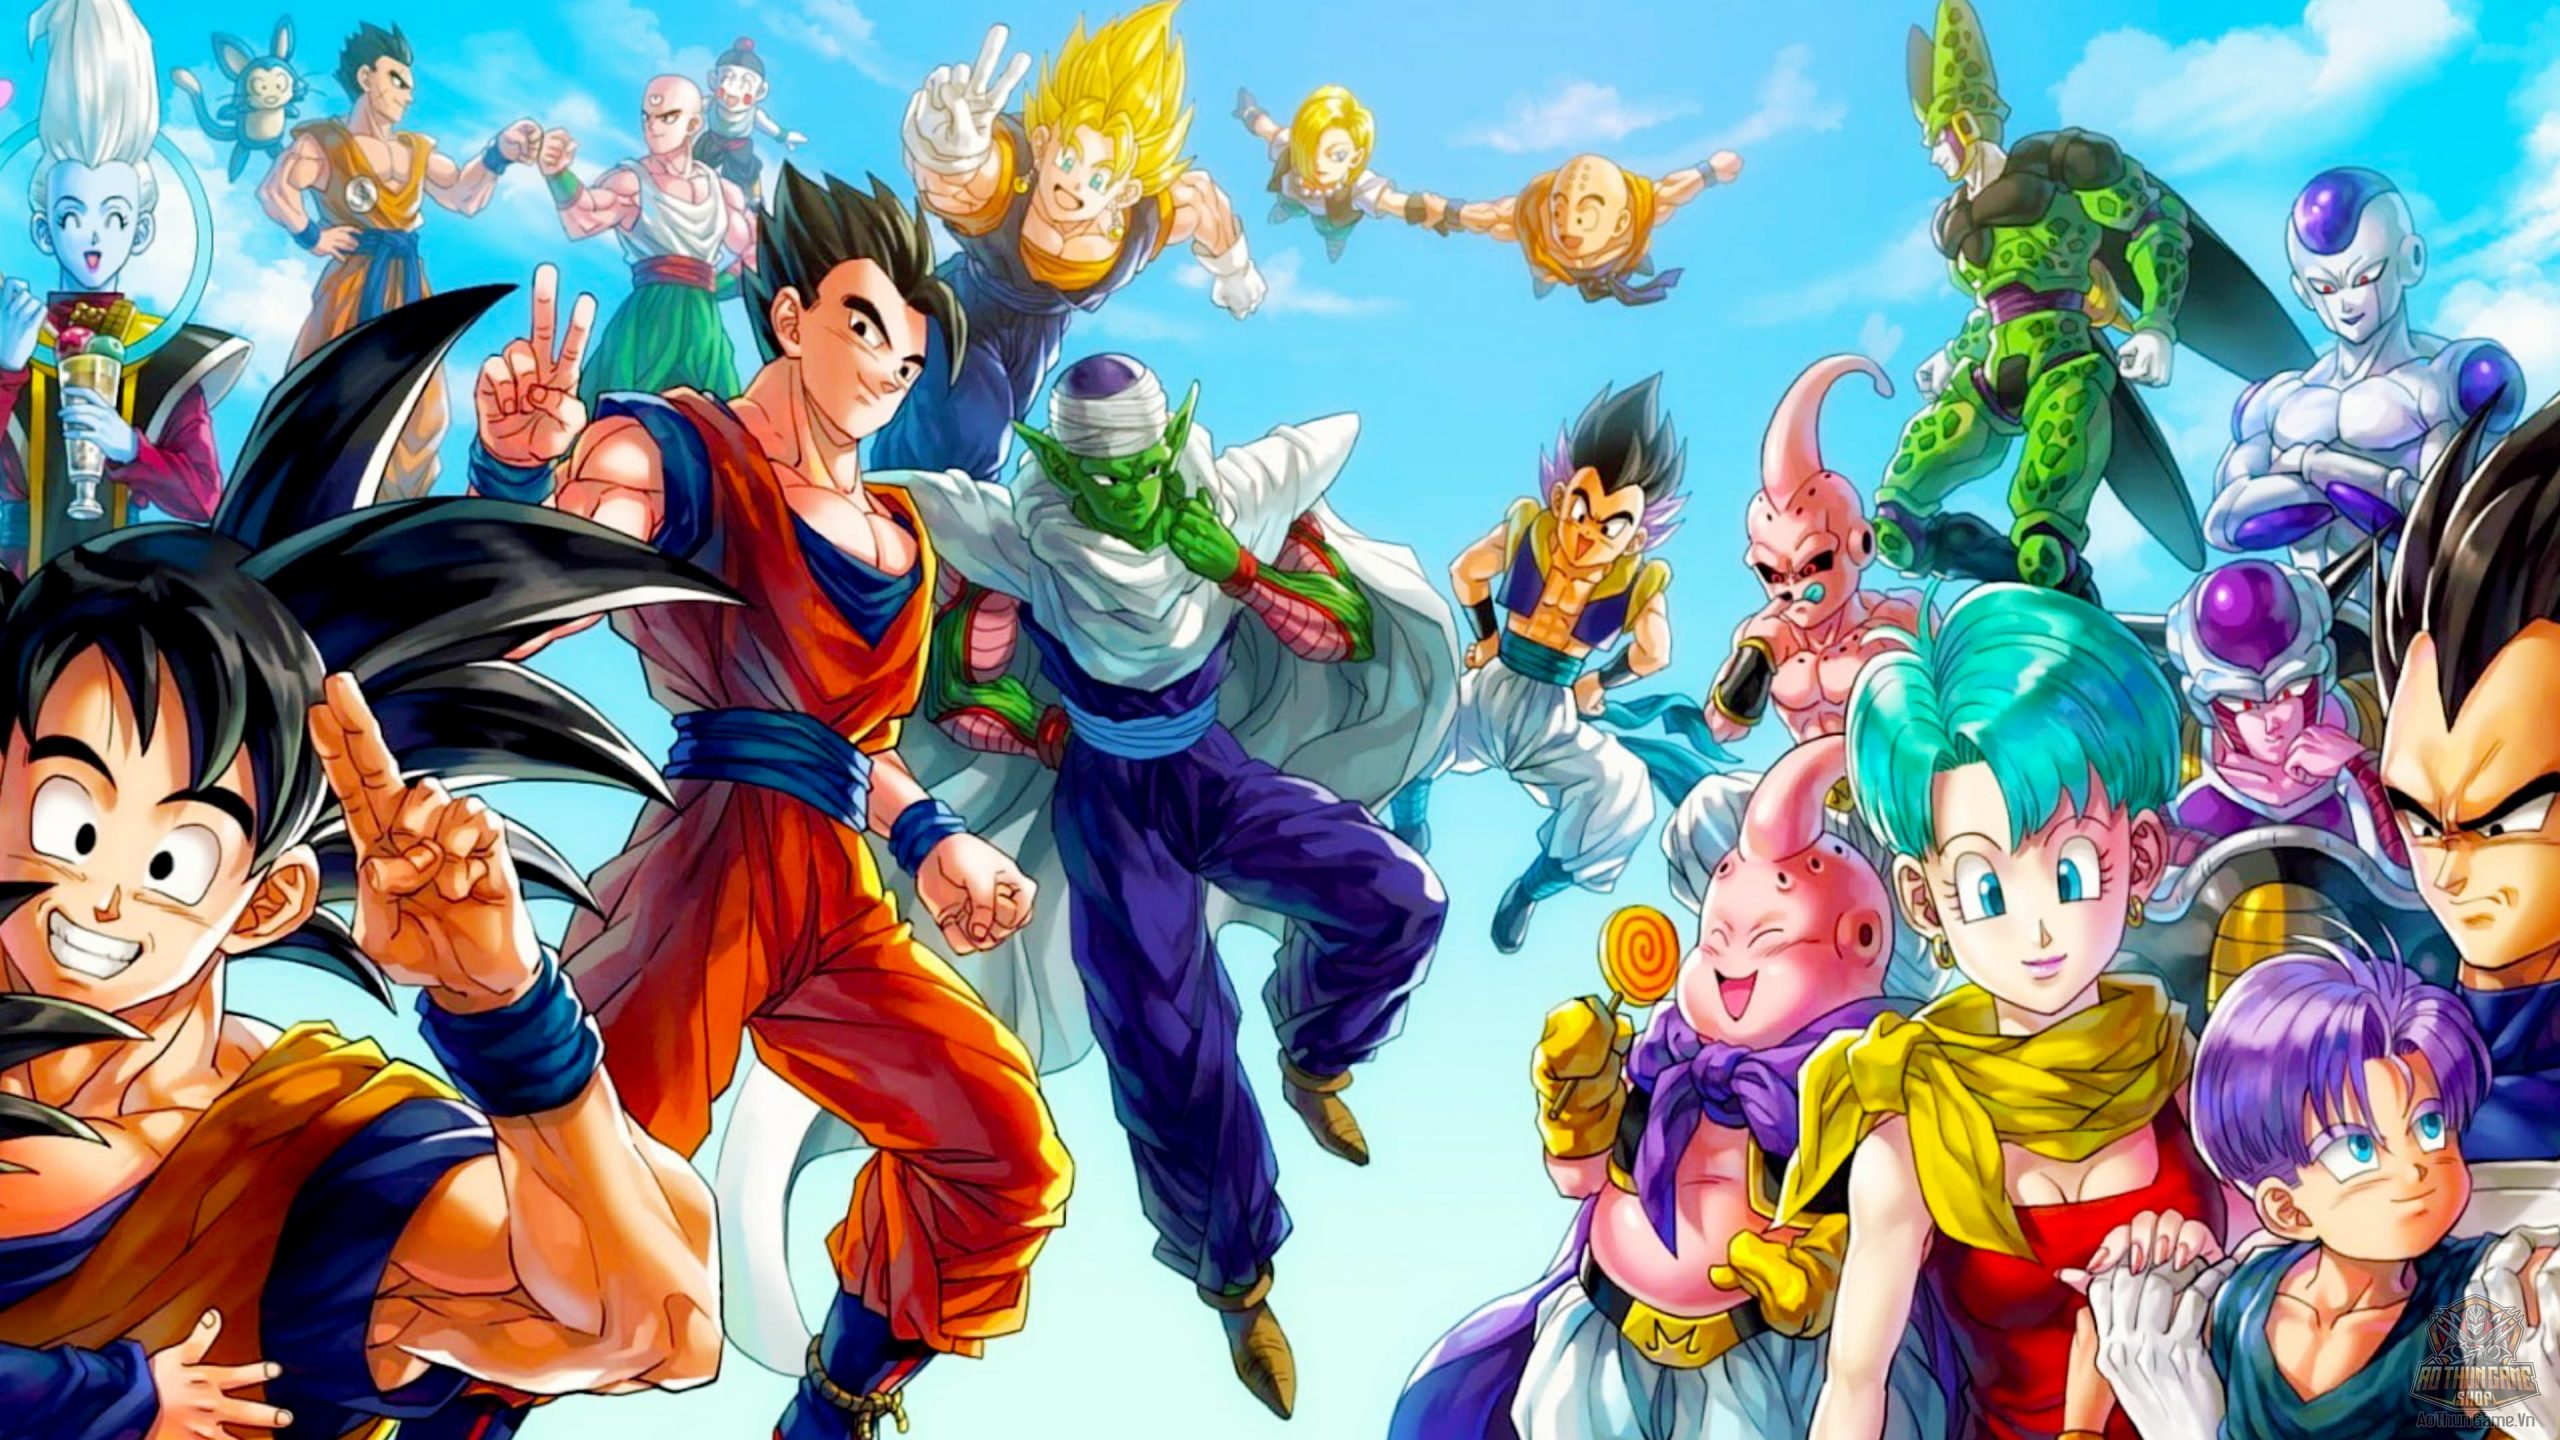 Ảnh Dragon Ball: Nếu bạn là fan của series anime huyền thoại Dragon Ball, hãy xem qua bộ ảnh Dragon Ball này để ngắm nhìn các nhân vật yêu thích của bạn như Goku, Vegeta, Piccolo, và nhiều nhân vật khác trong các tình huống hấp dẫn và đầy màu sắc trong anime.